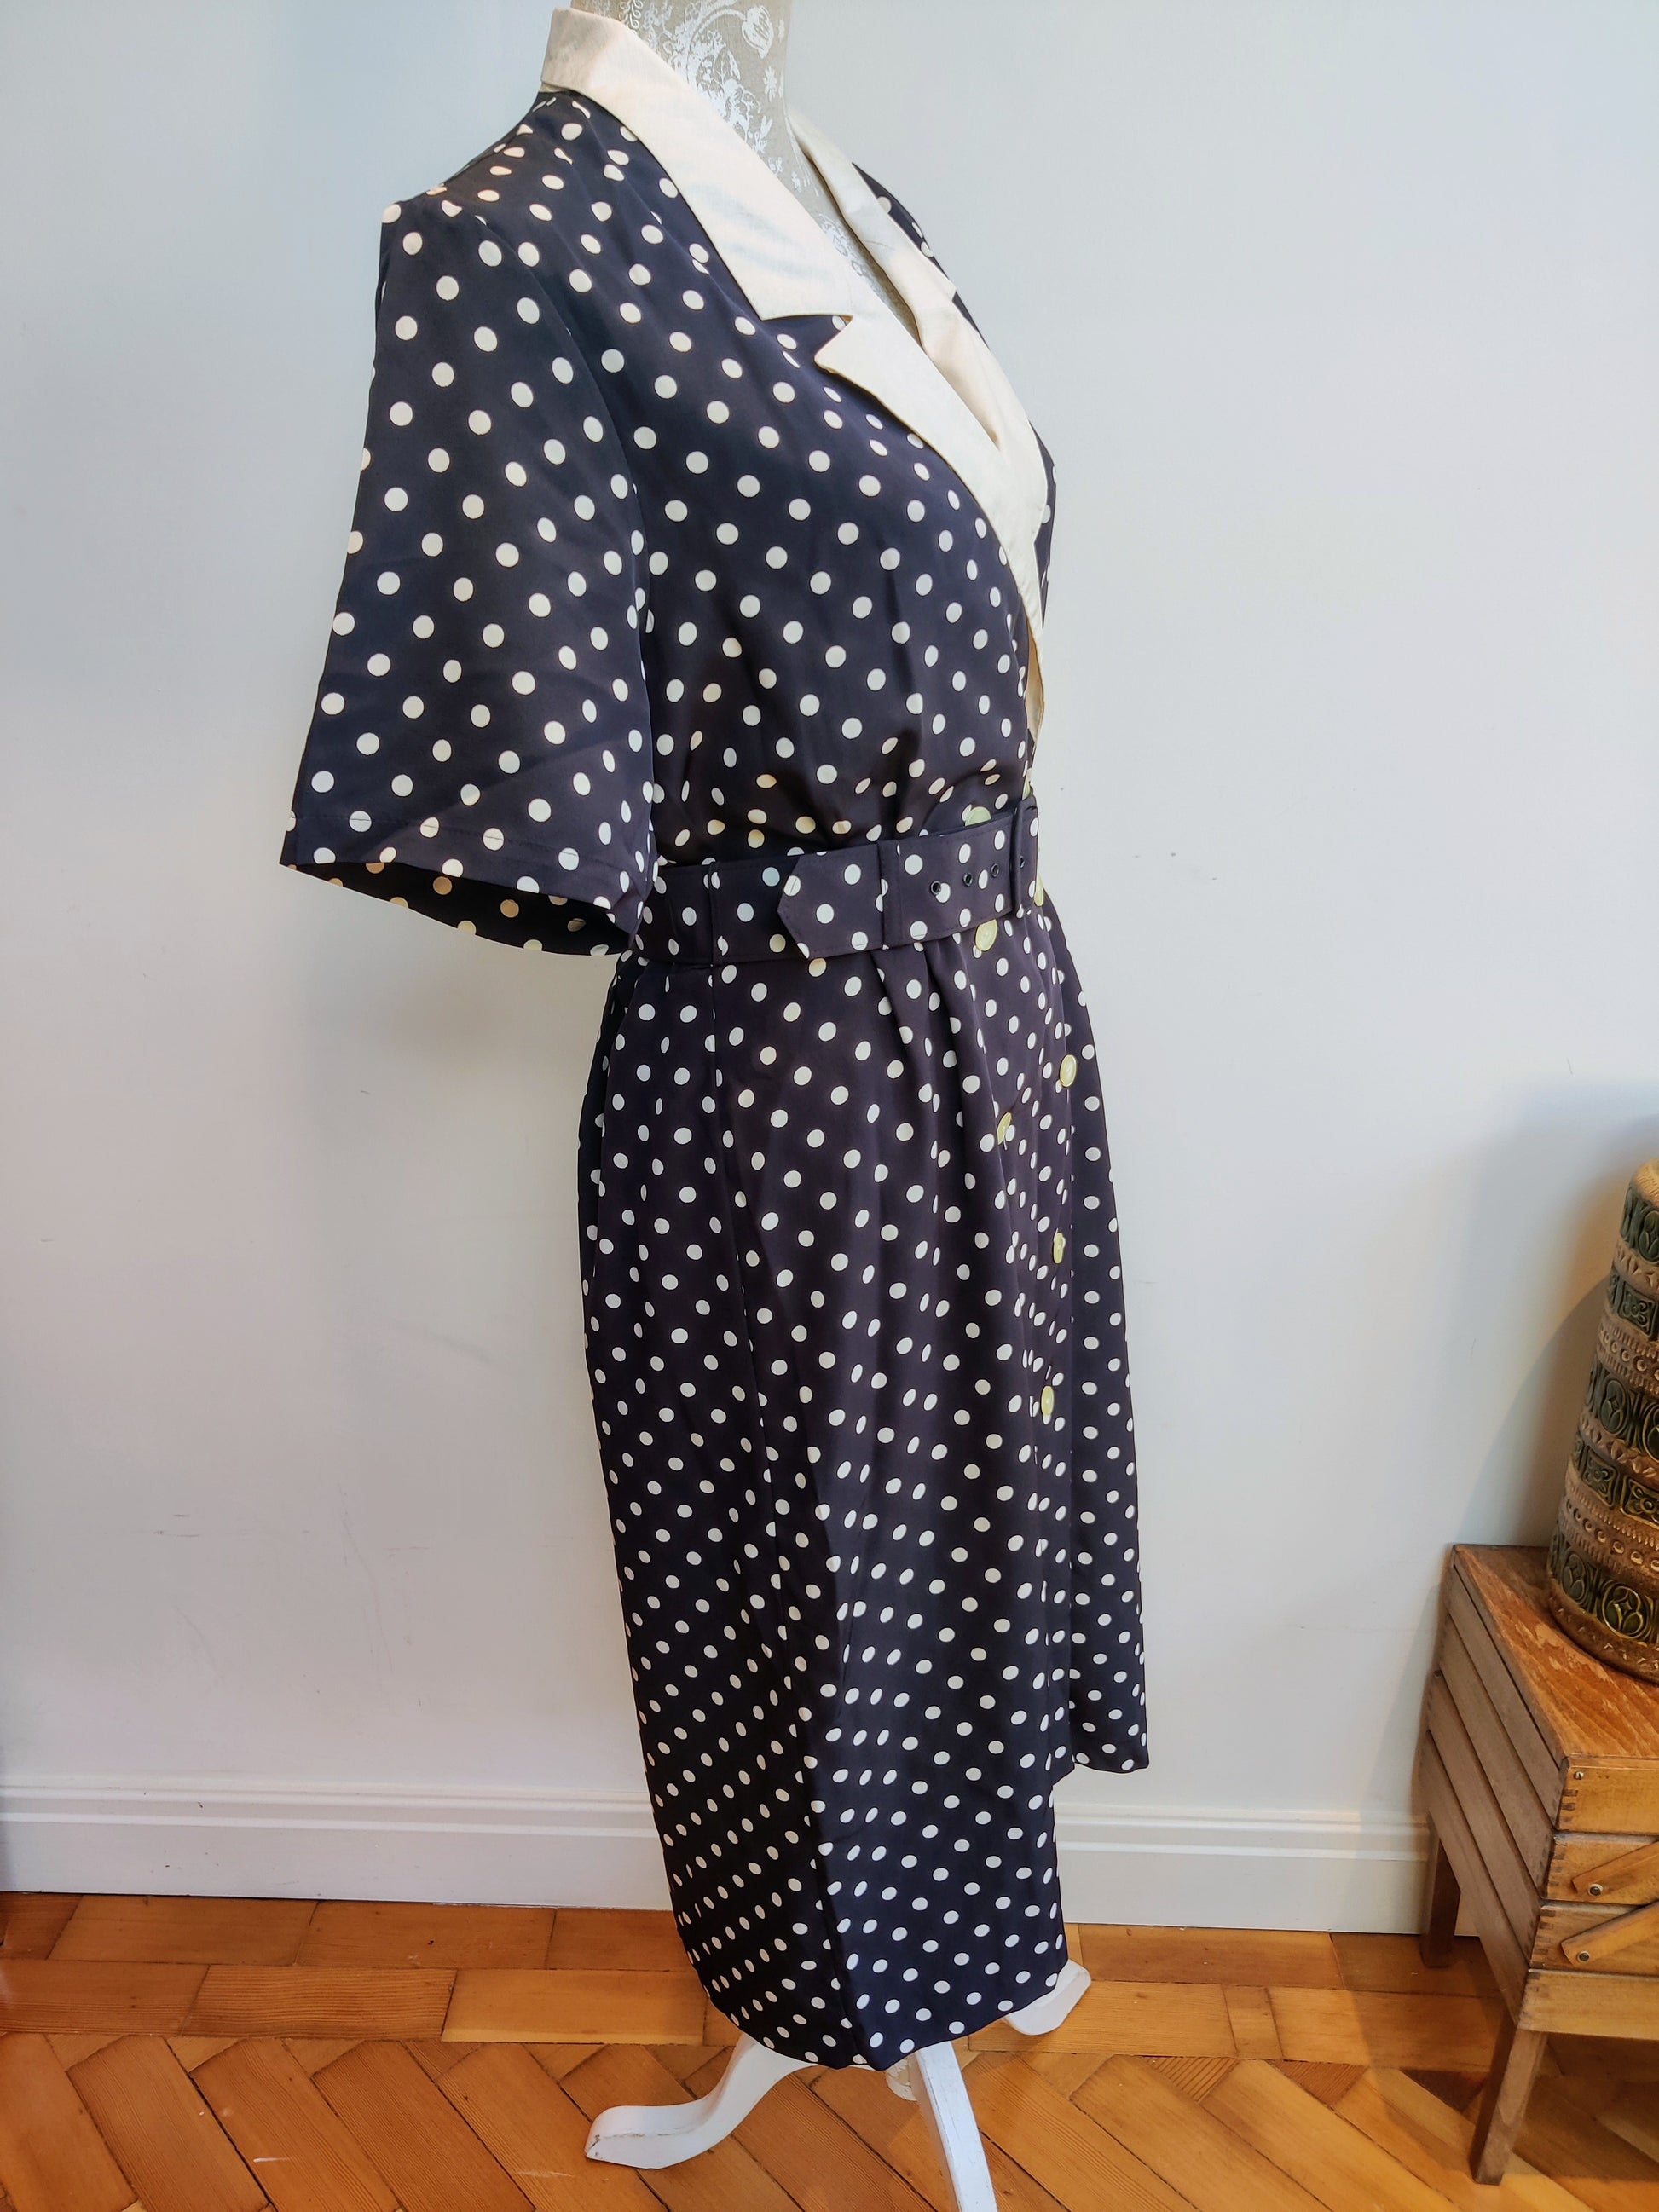 Navy polka dot vintage dress with belt